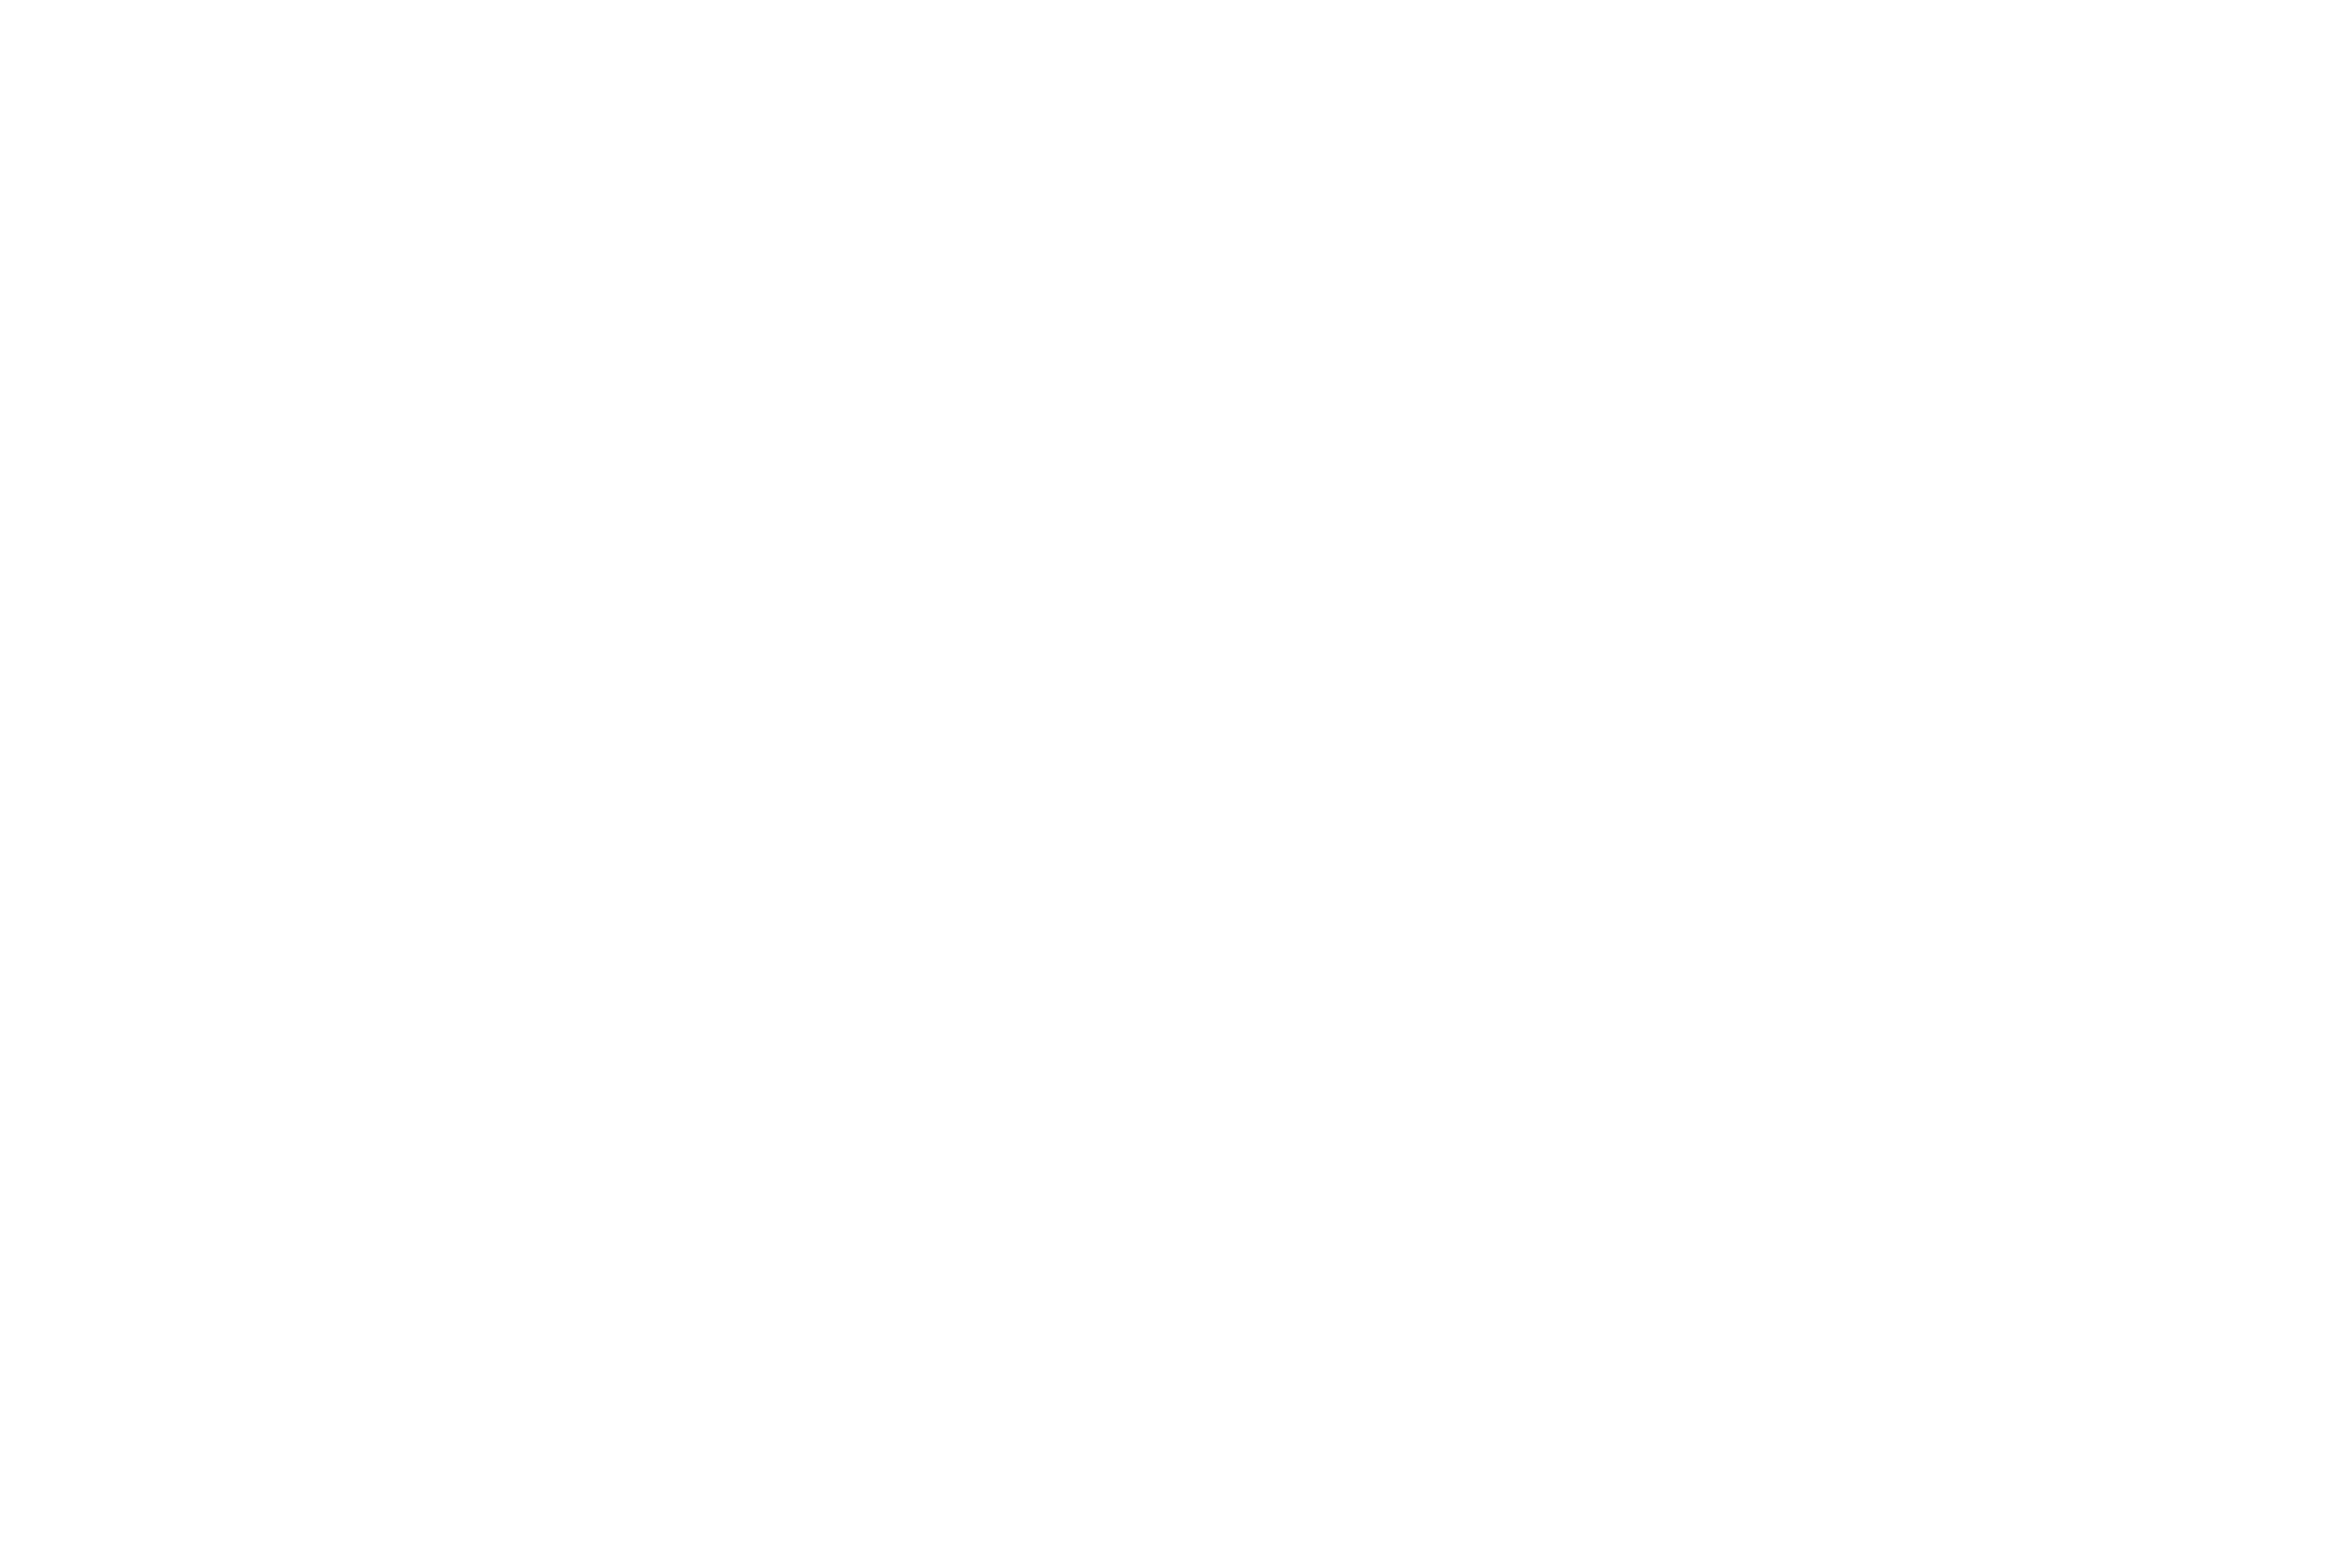 Tân Đại Thành Group